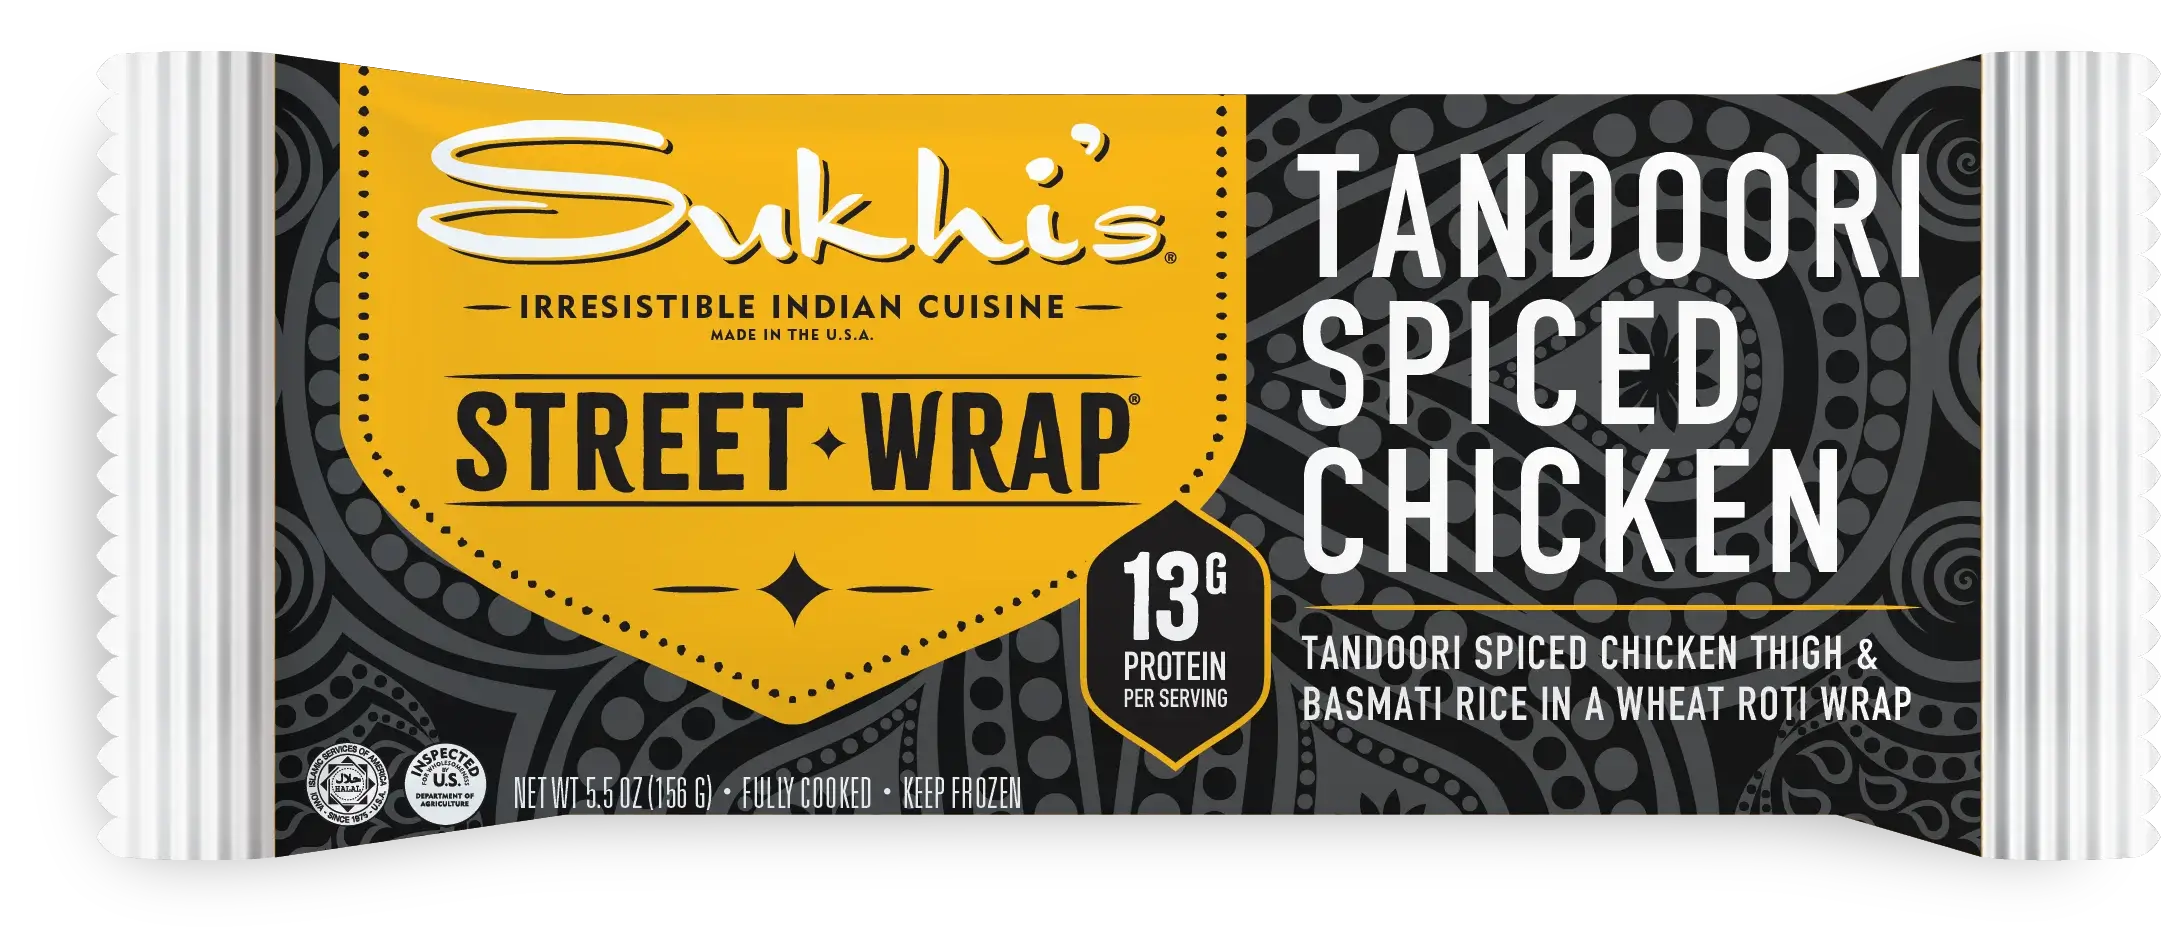 Tandoori Spiced Chicken Street Wrap